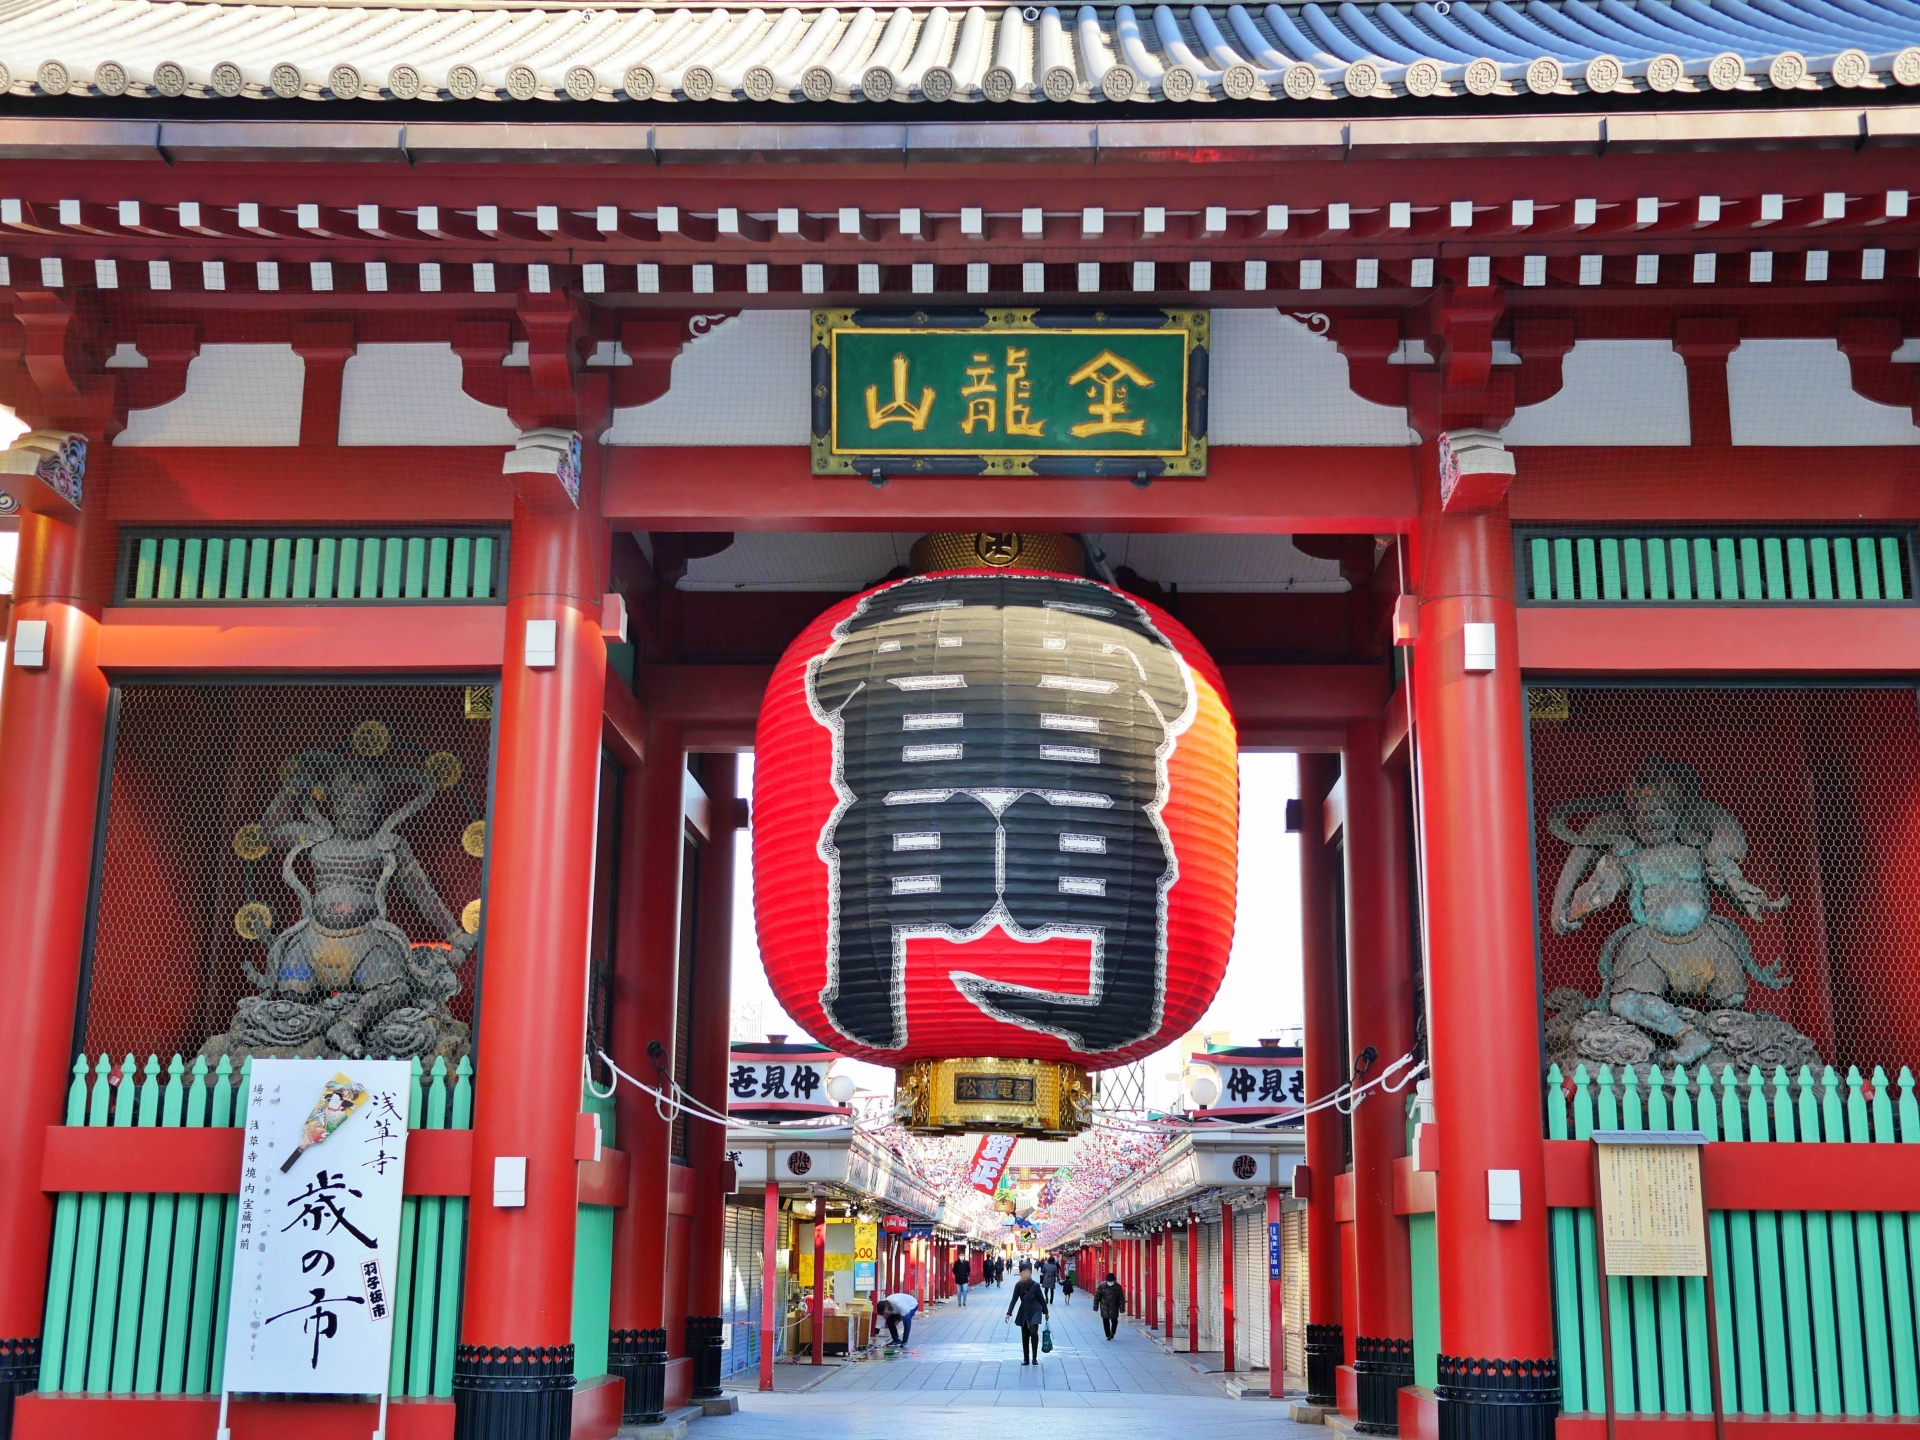 浅草のシンボル「金龍山 浅草寺」朱塗りの楼門、朱色の五重塔